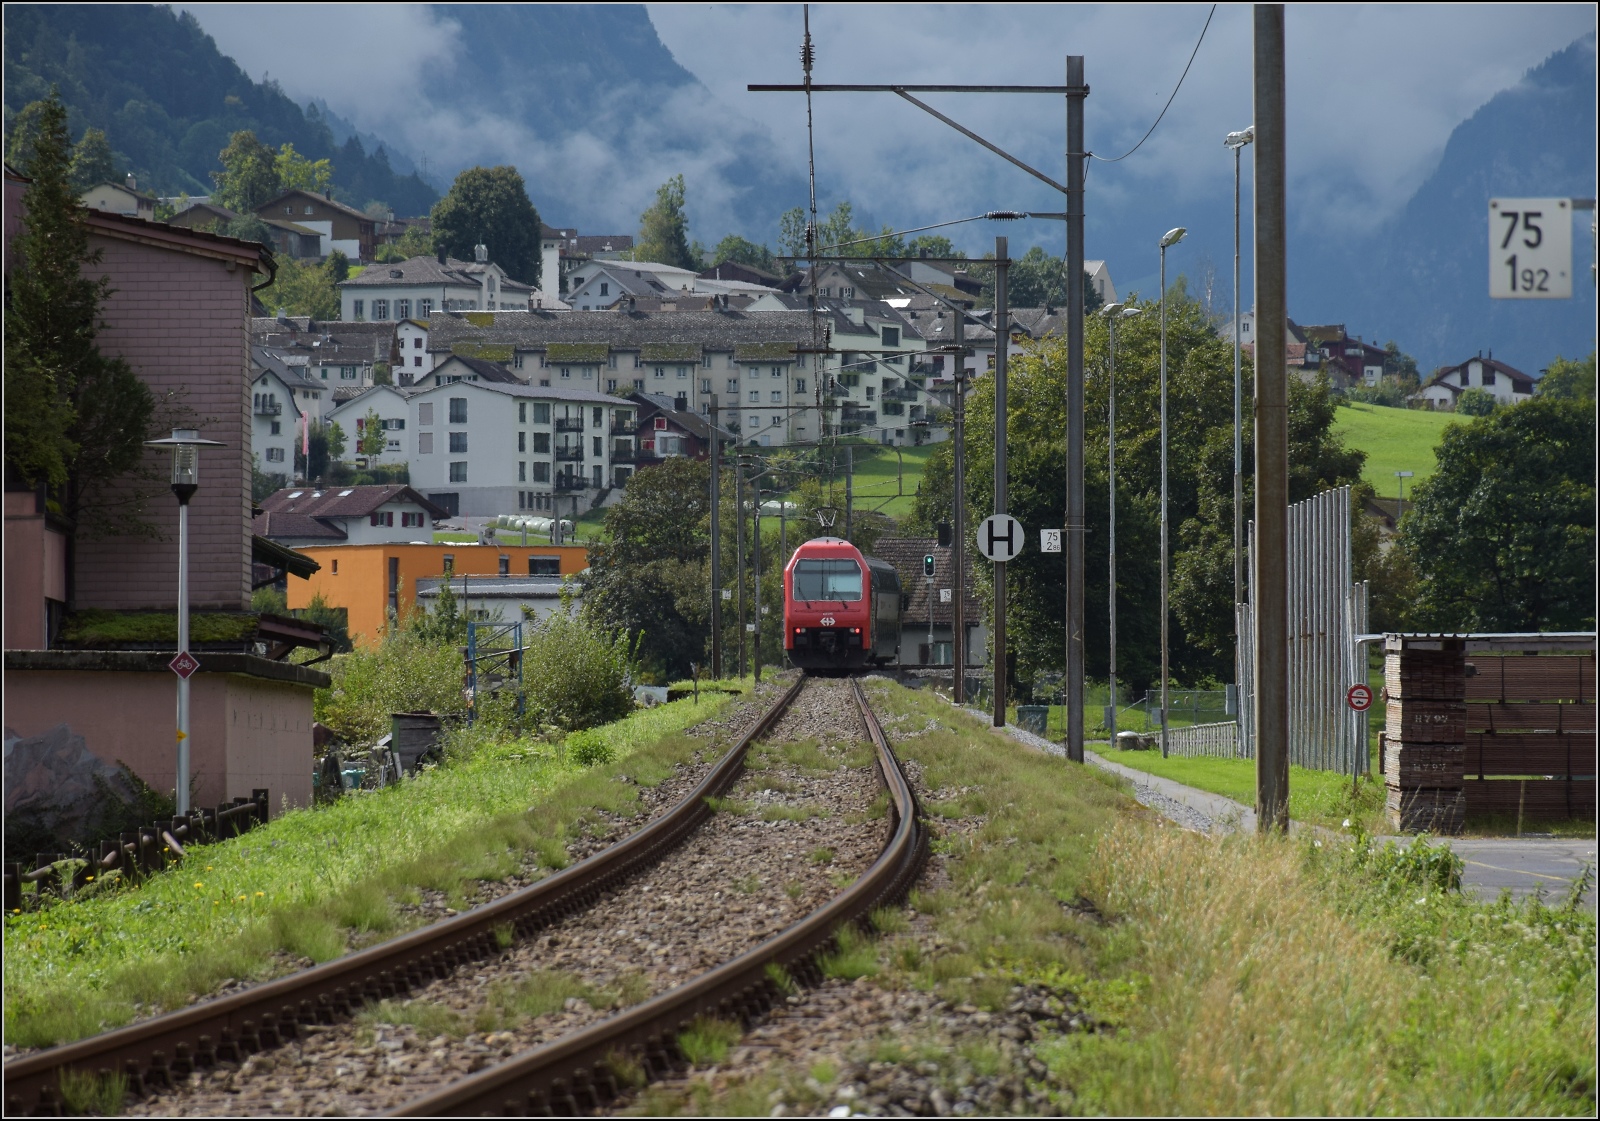 Zrcher S-Bahn mit Re 450 082 in Spittel mit Blick auf Haslen GL. September 2022.